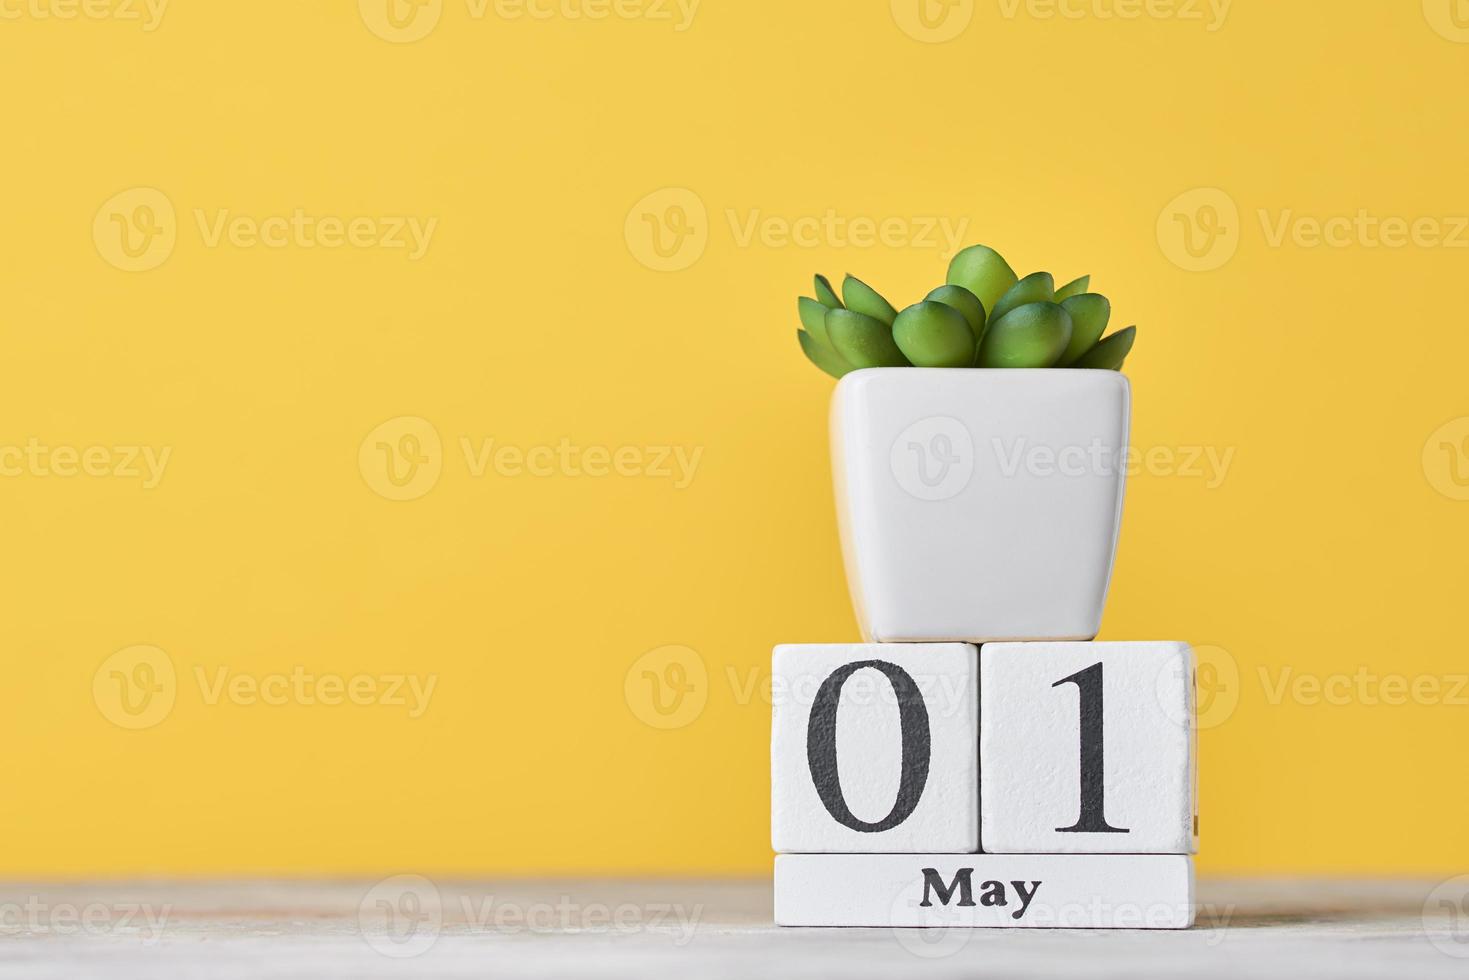 holzblockkalender mit datum 1. mai und sukkulente auf gelbem hintergrund foto